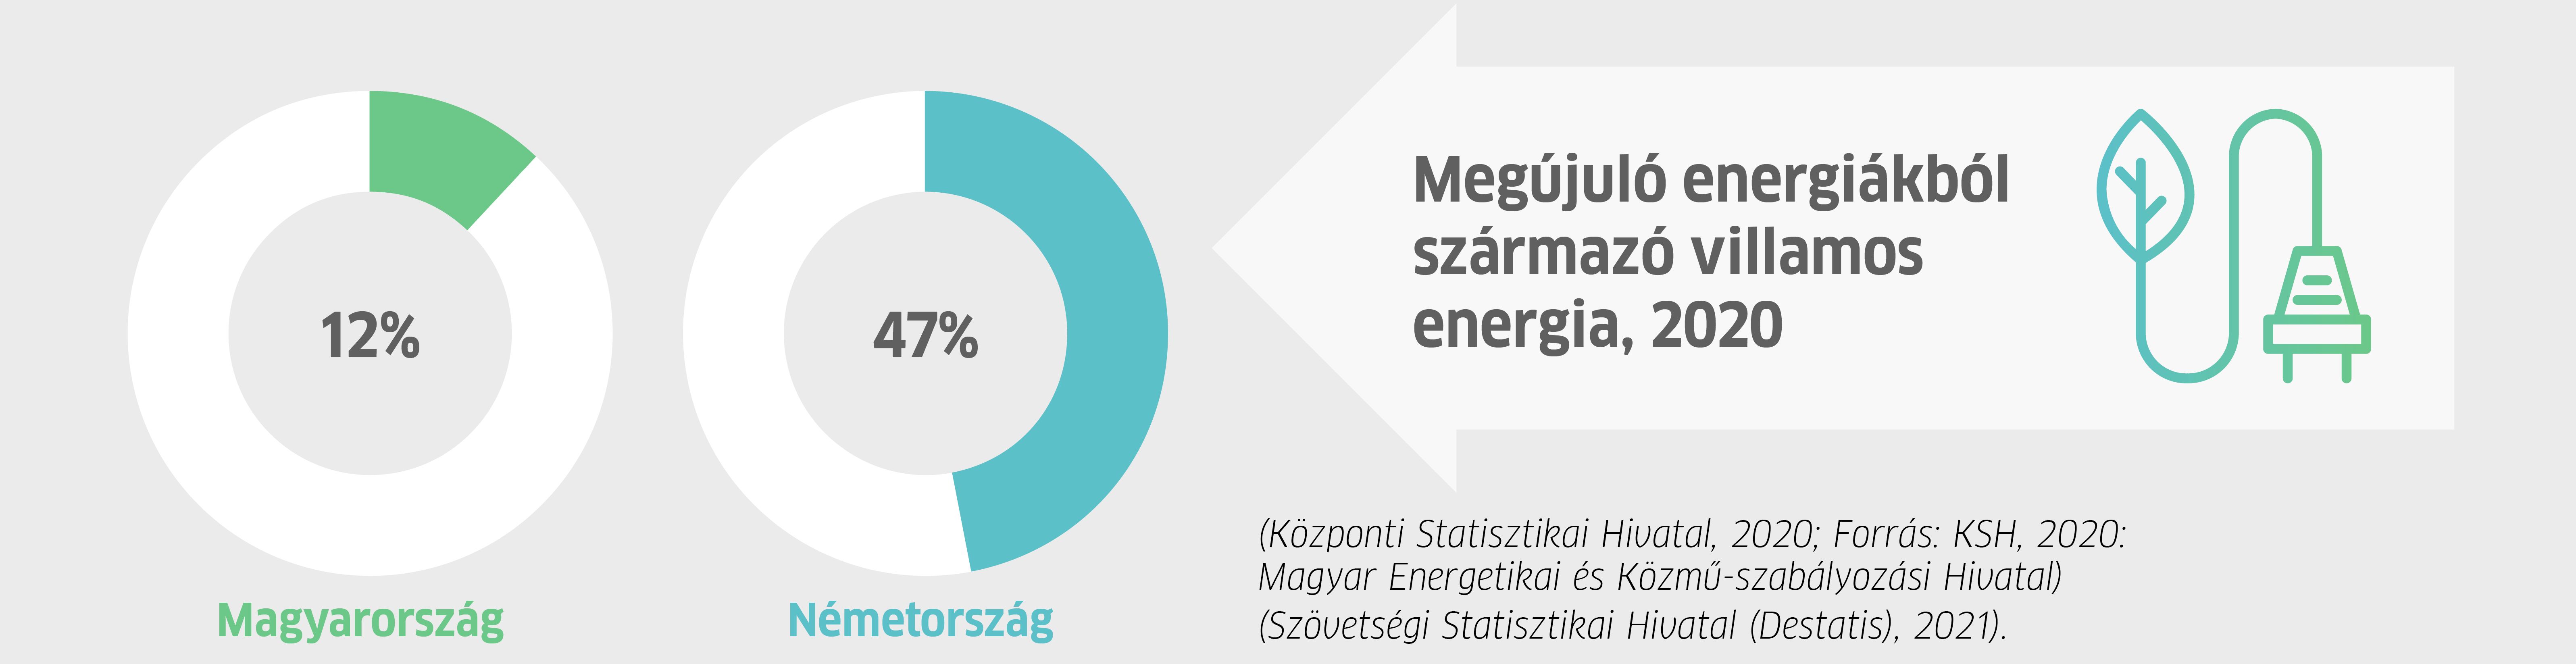 Megújuló energiákra vonatkozó statisztikák